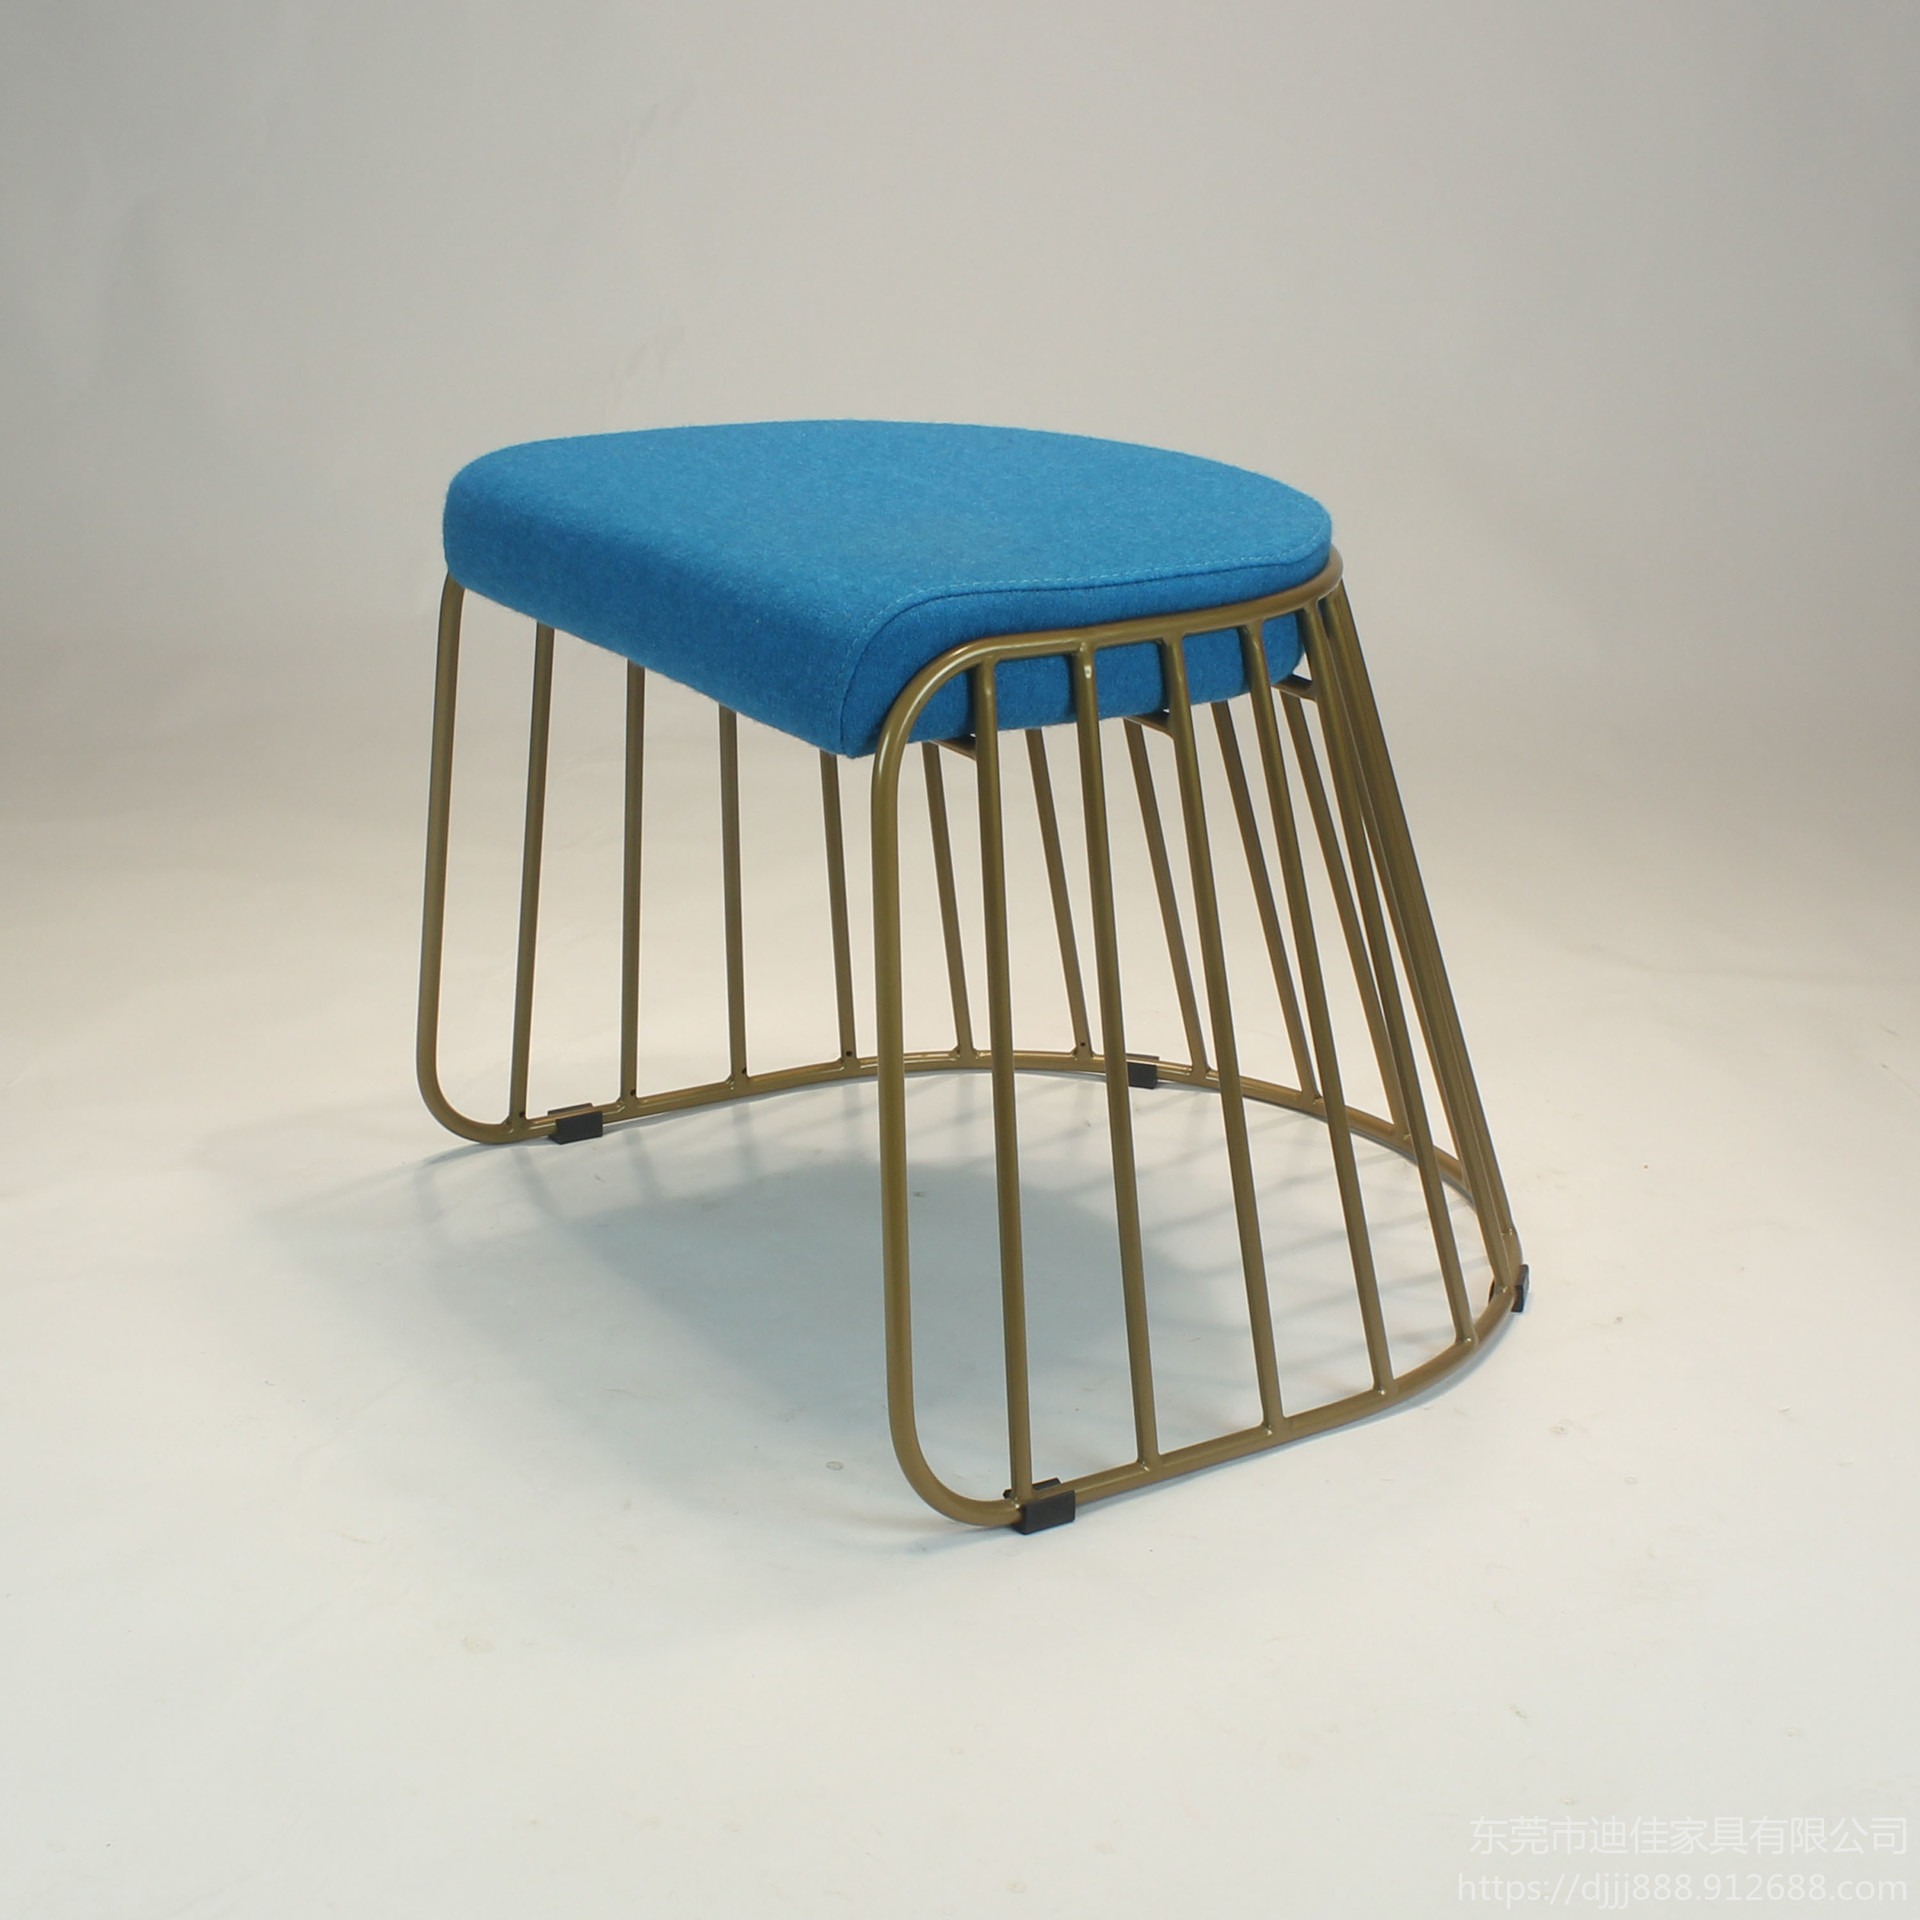 顺德 北欧塑料椅子 实木椅子 实木椅子原木 北欧椅子 现代简约款式多